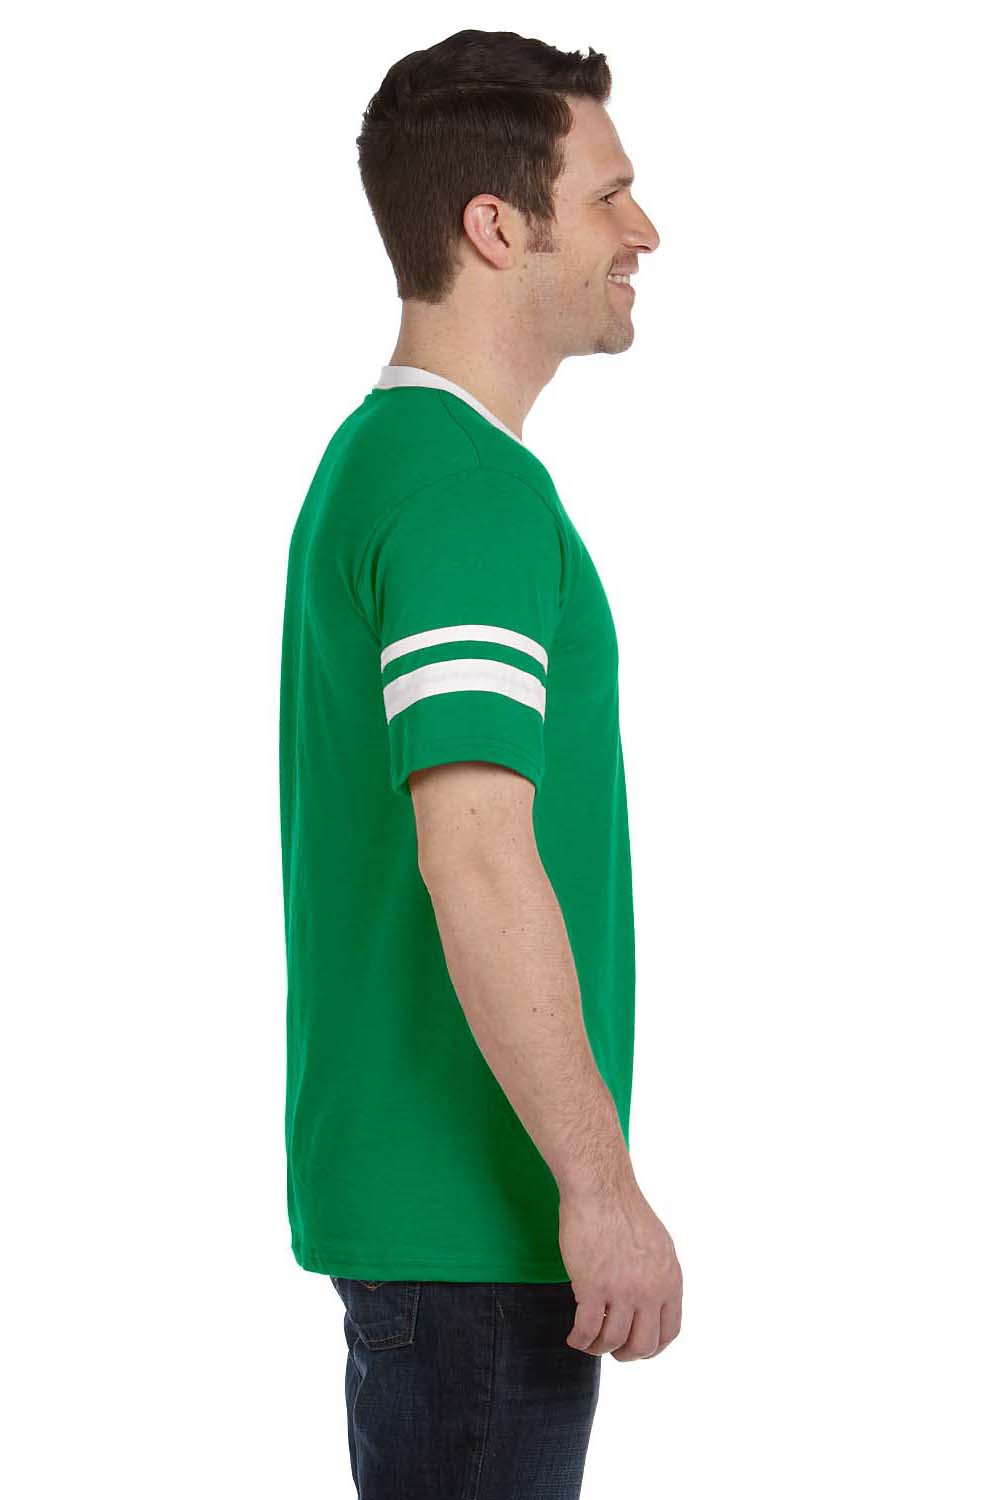 Augusta Sportswear 360 Mens Short Sleeve V-Neck T-Shirt Kelly Green/White Model Side